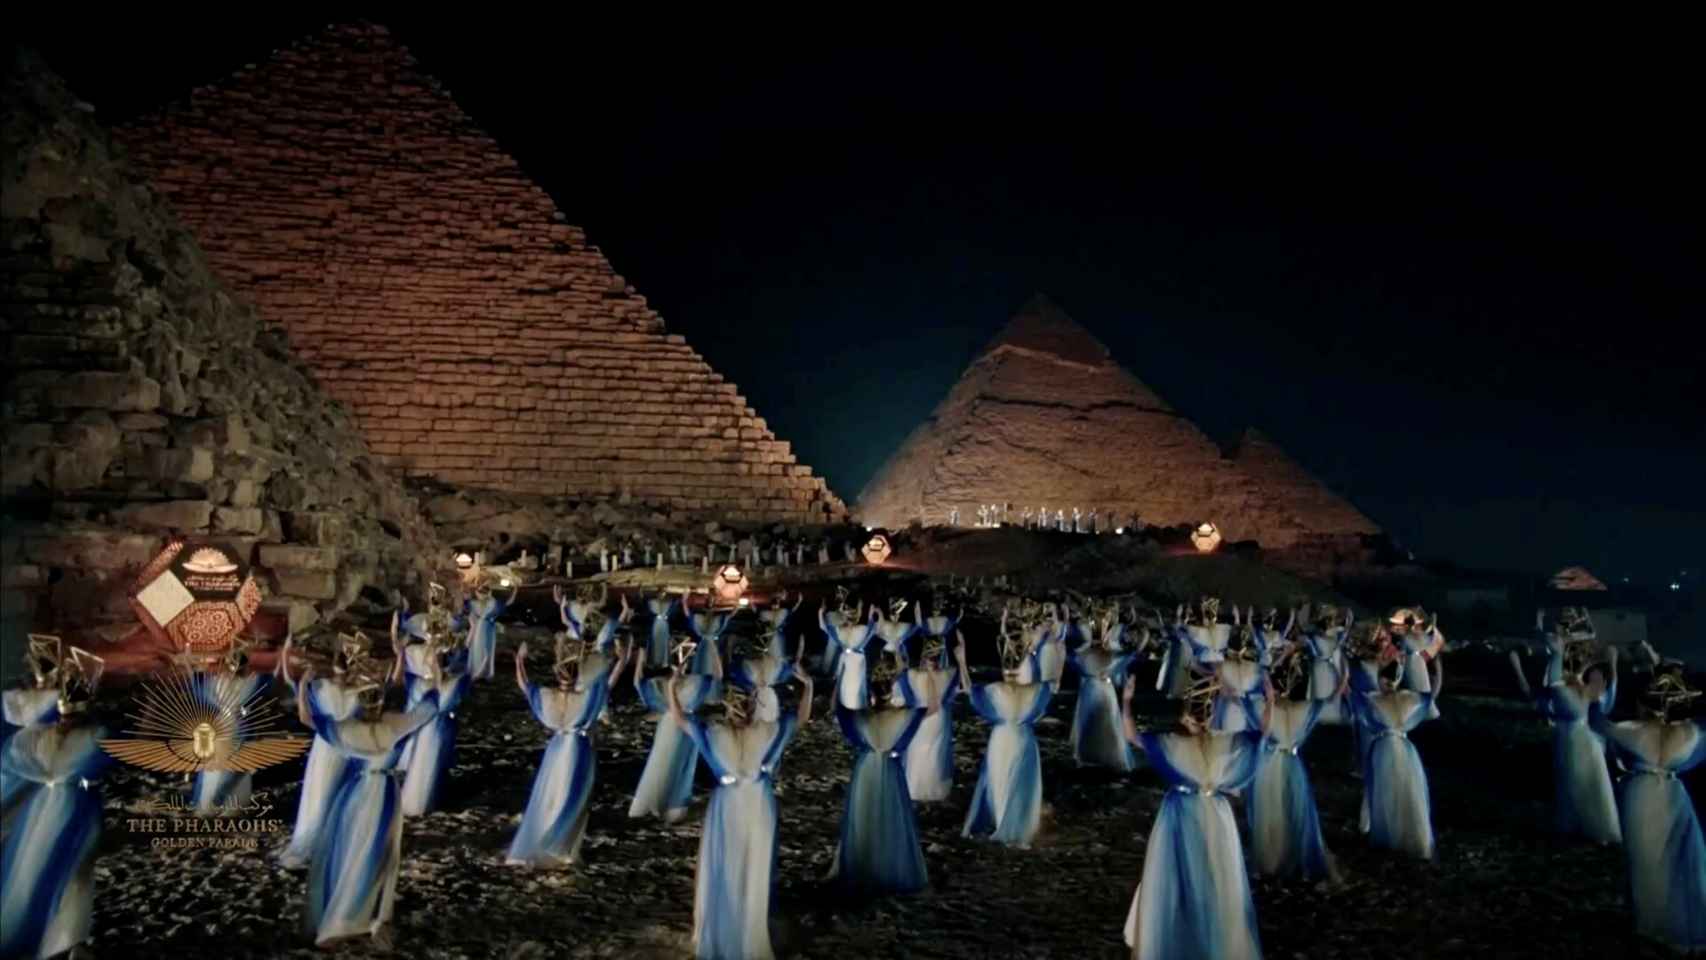 El desfile también ha 'transportado' las famosas pirámides hasta el centro de El Cairo gracias a las herramientas de videomapping.